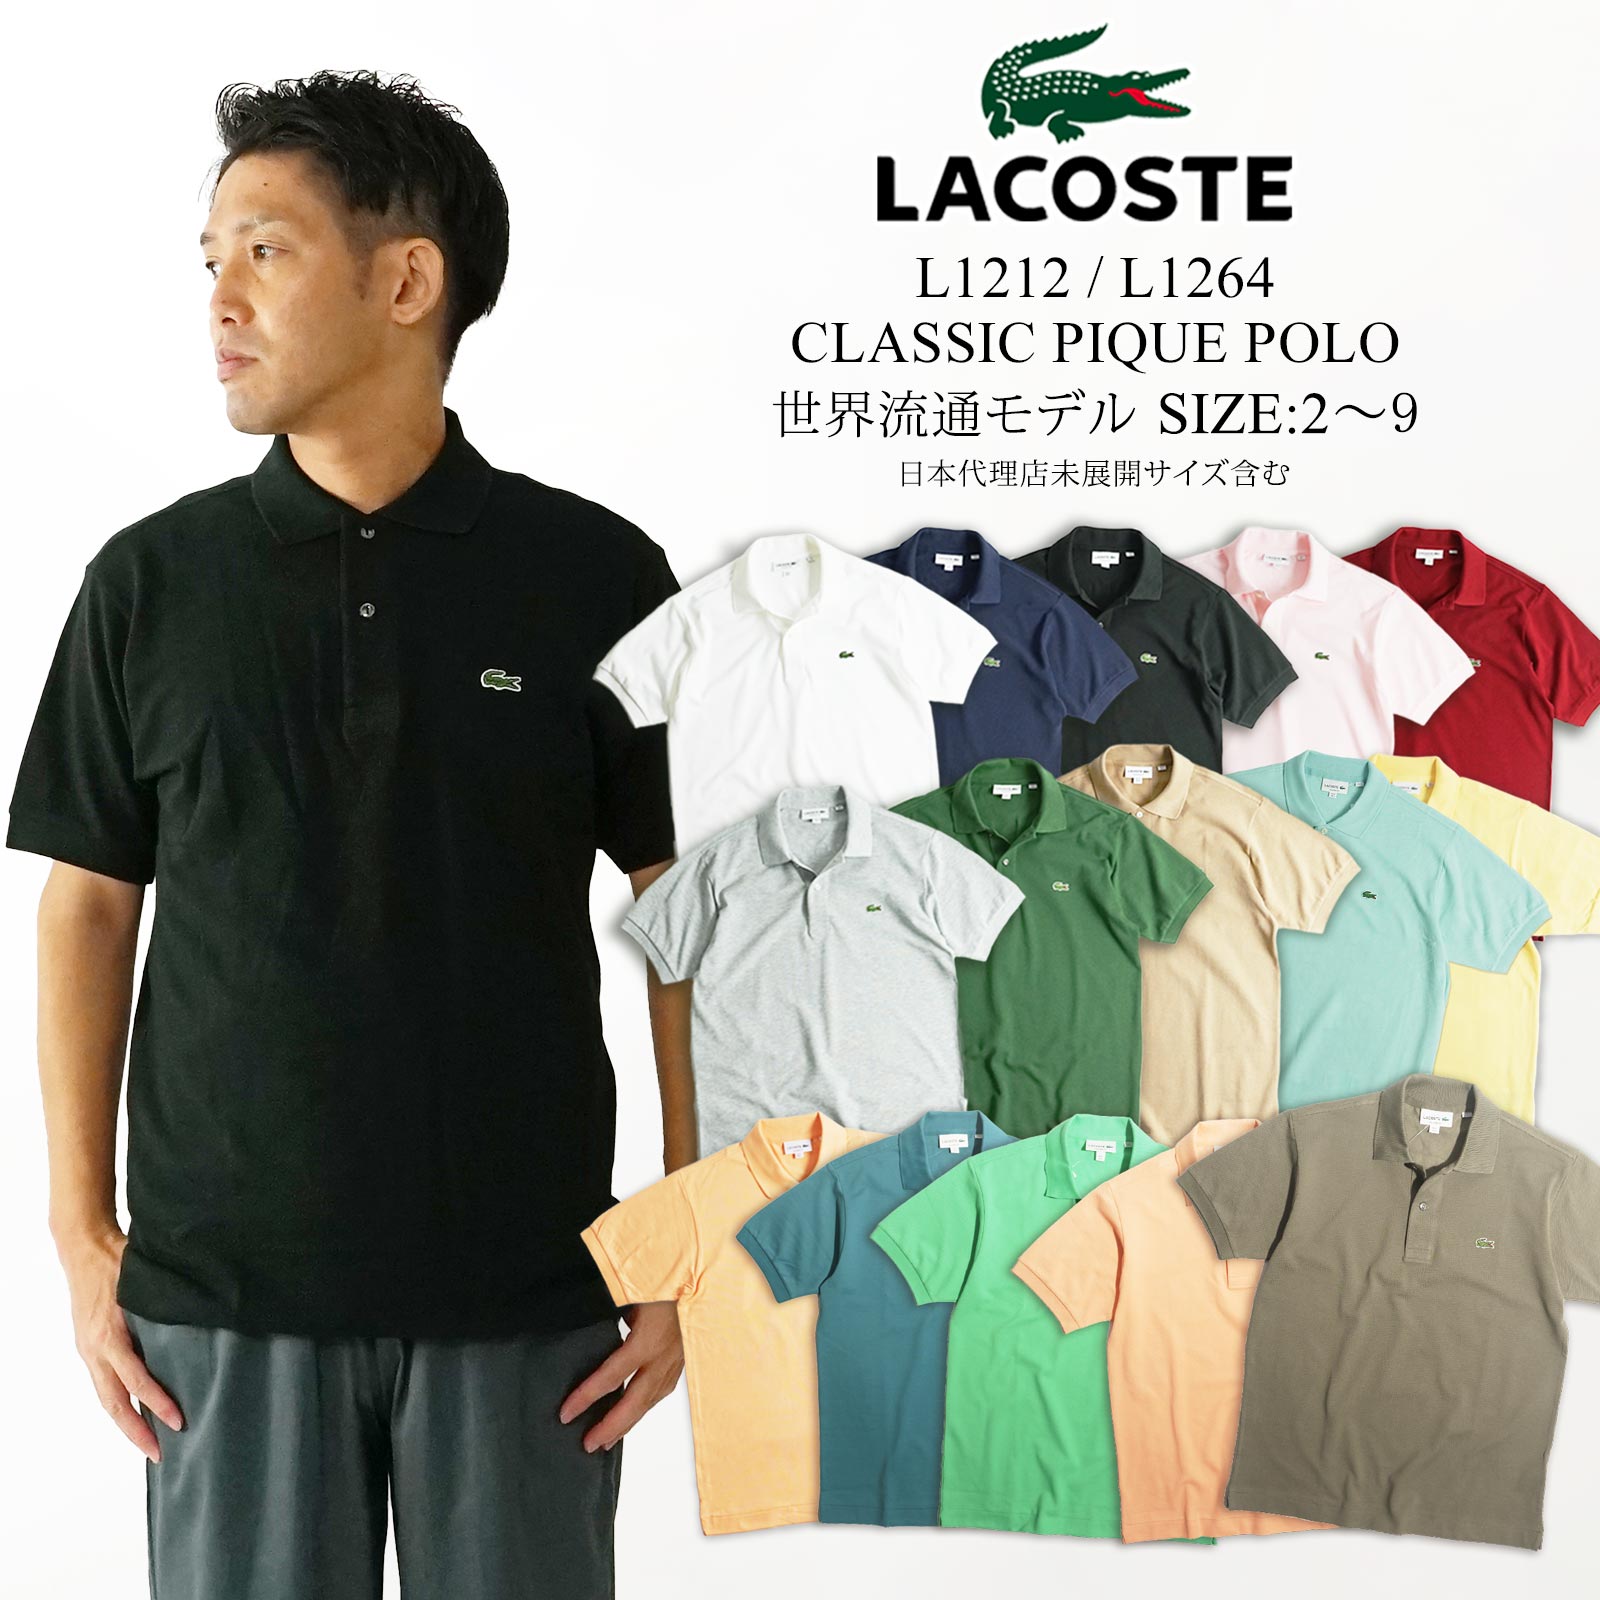 ラコステ LACOSTE L1212/L1264 半袖 ポロシャツ メンズ 鹿の子 世界流通モデル Classic Pique Polo BIG SIZE ｜ 大きいサイズ 定番 ビジネス カジュアルにも ホワイト ネイビー ブラック ピング グレー グリーン ブルー チャコール